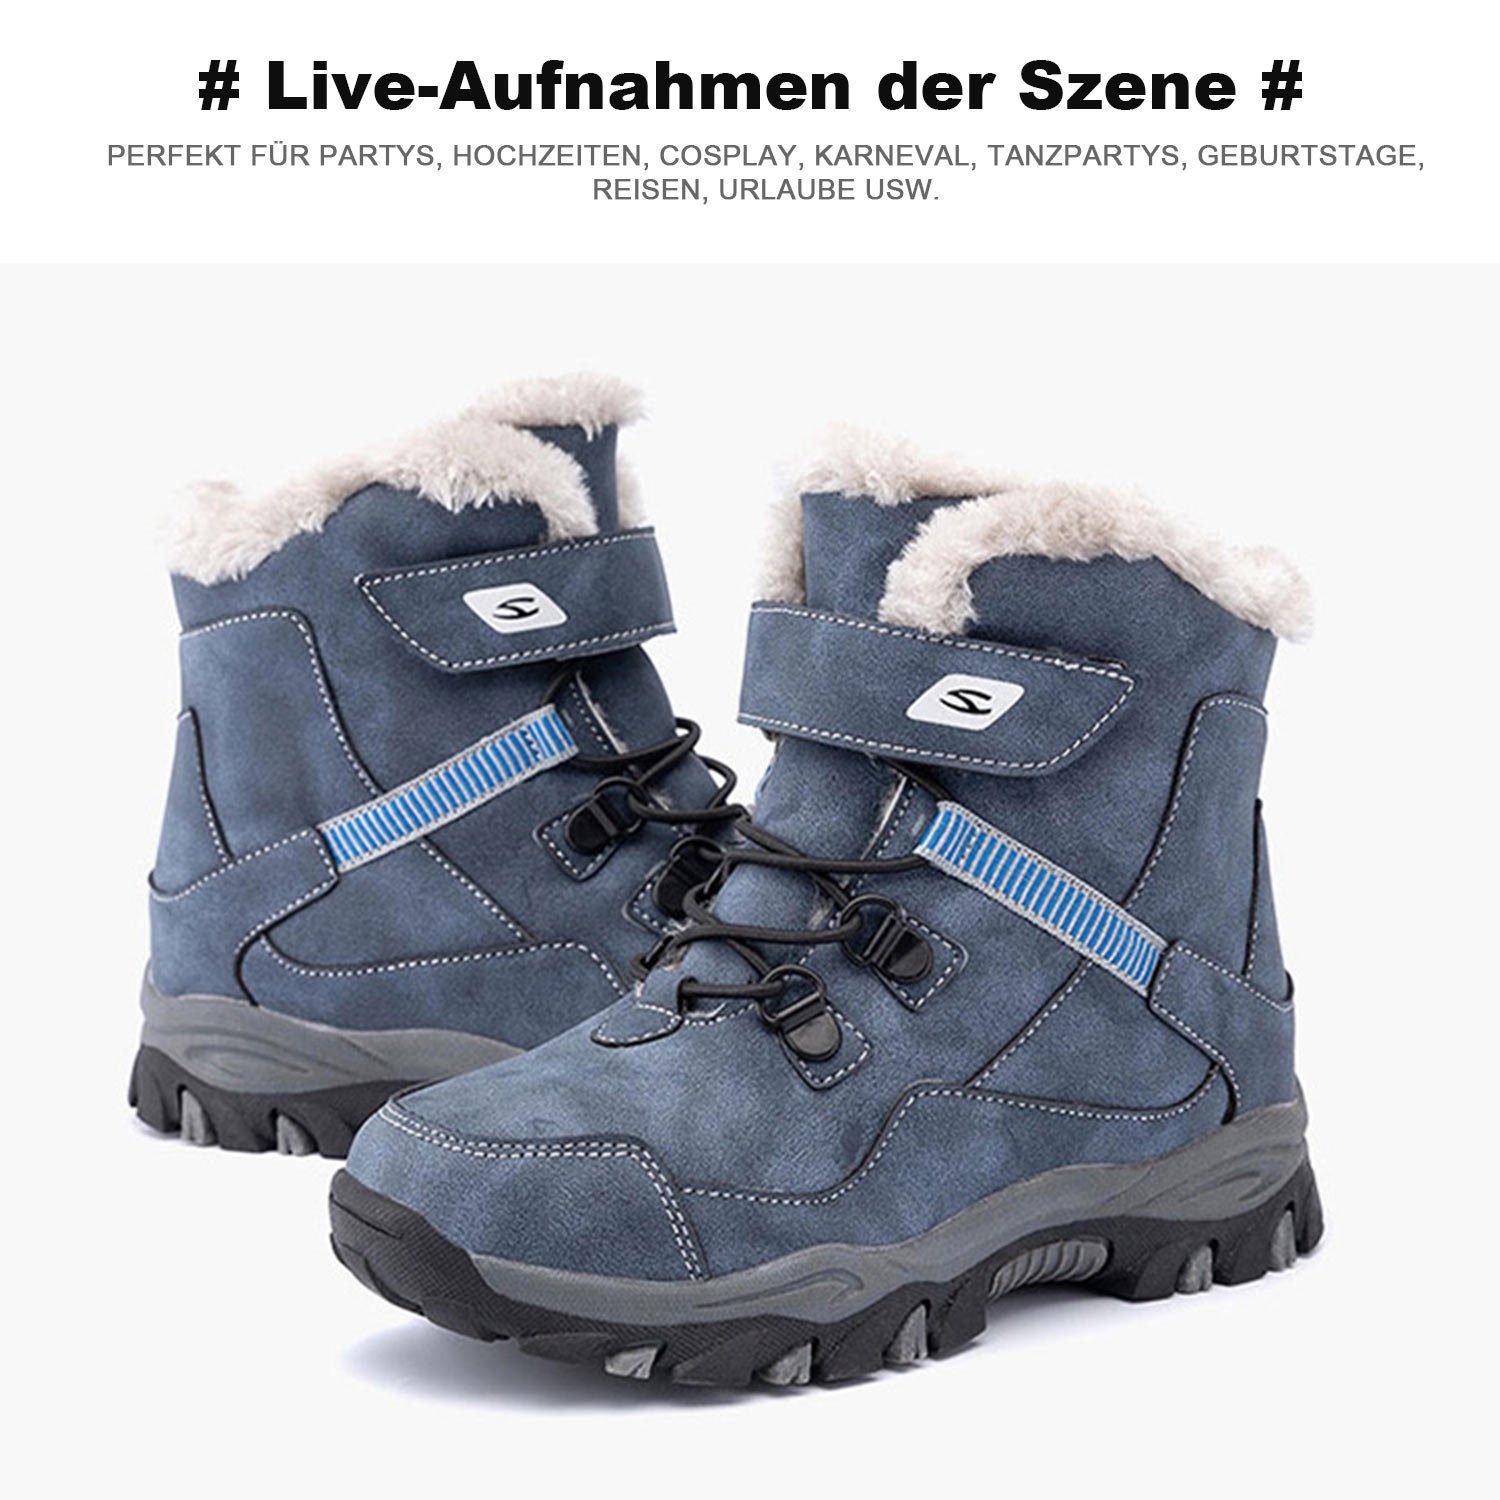 Daisred Schneestiefel Stiefel Boots Blau Klettverschluss Martin Winterstiefel